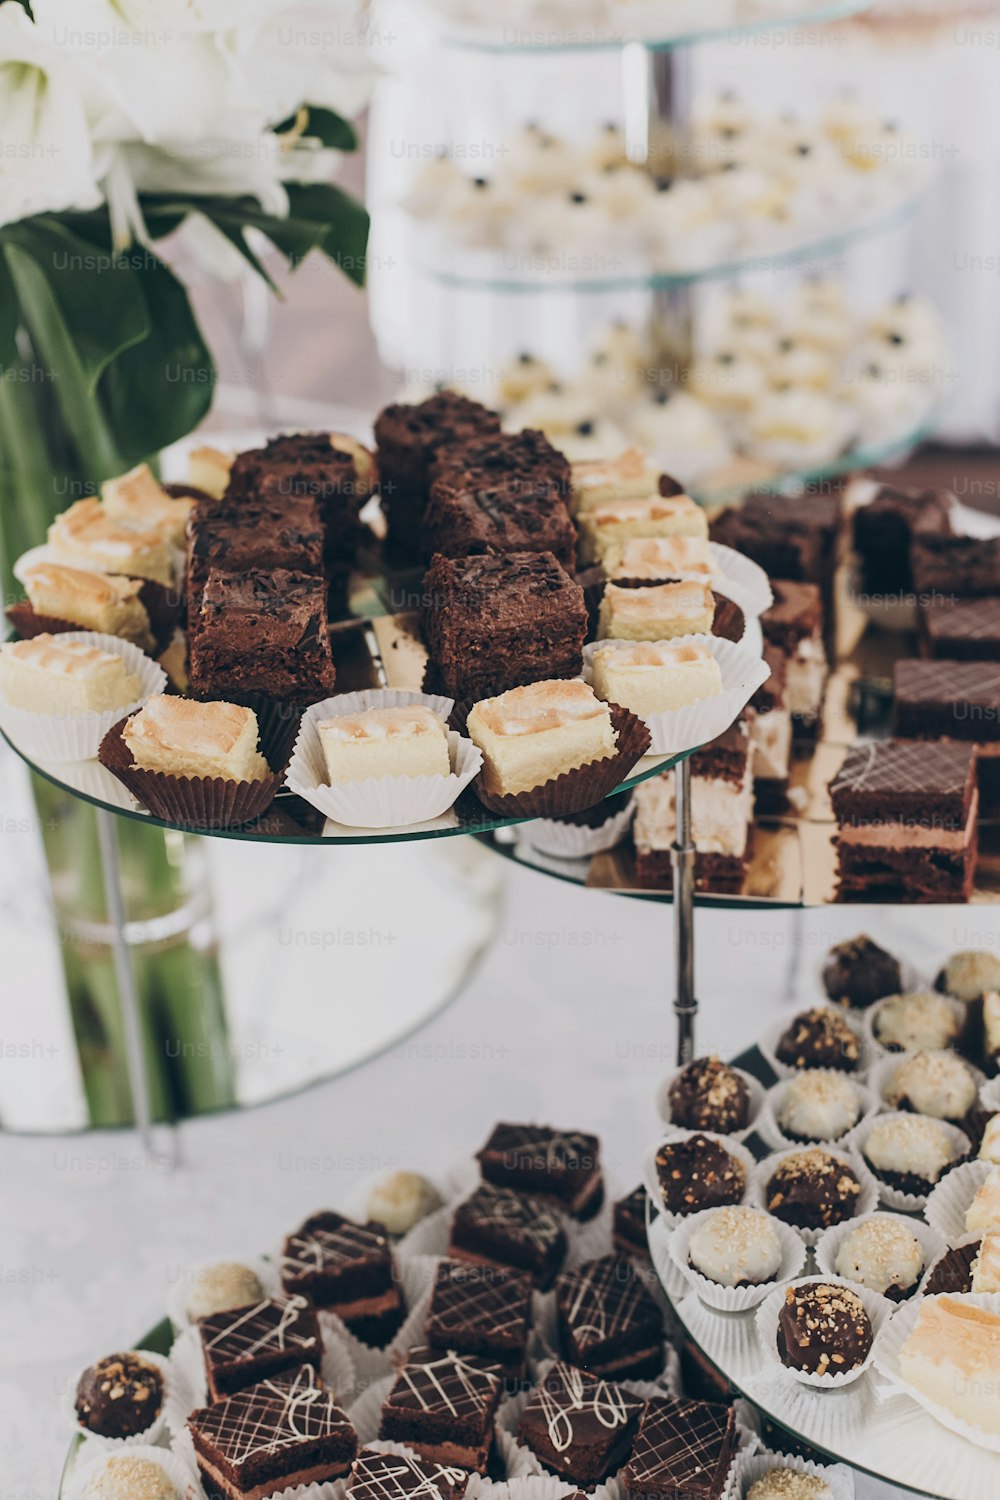 Hochzeit Schokoriegel. Köstliche Schokoladendesserts, Kuchen und Kekse am Stand bei der Hochzeitsfeier im Restaurant. Luxus-Catering-Service